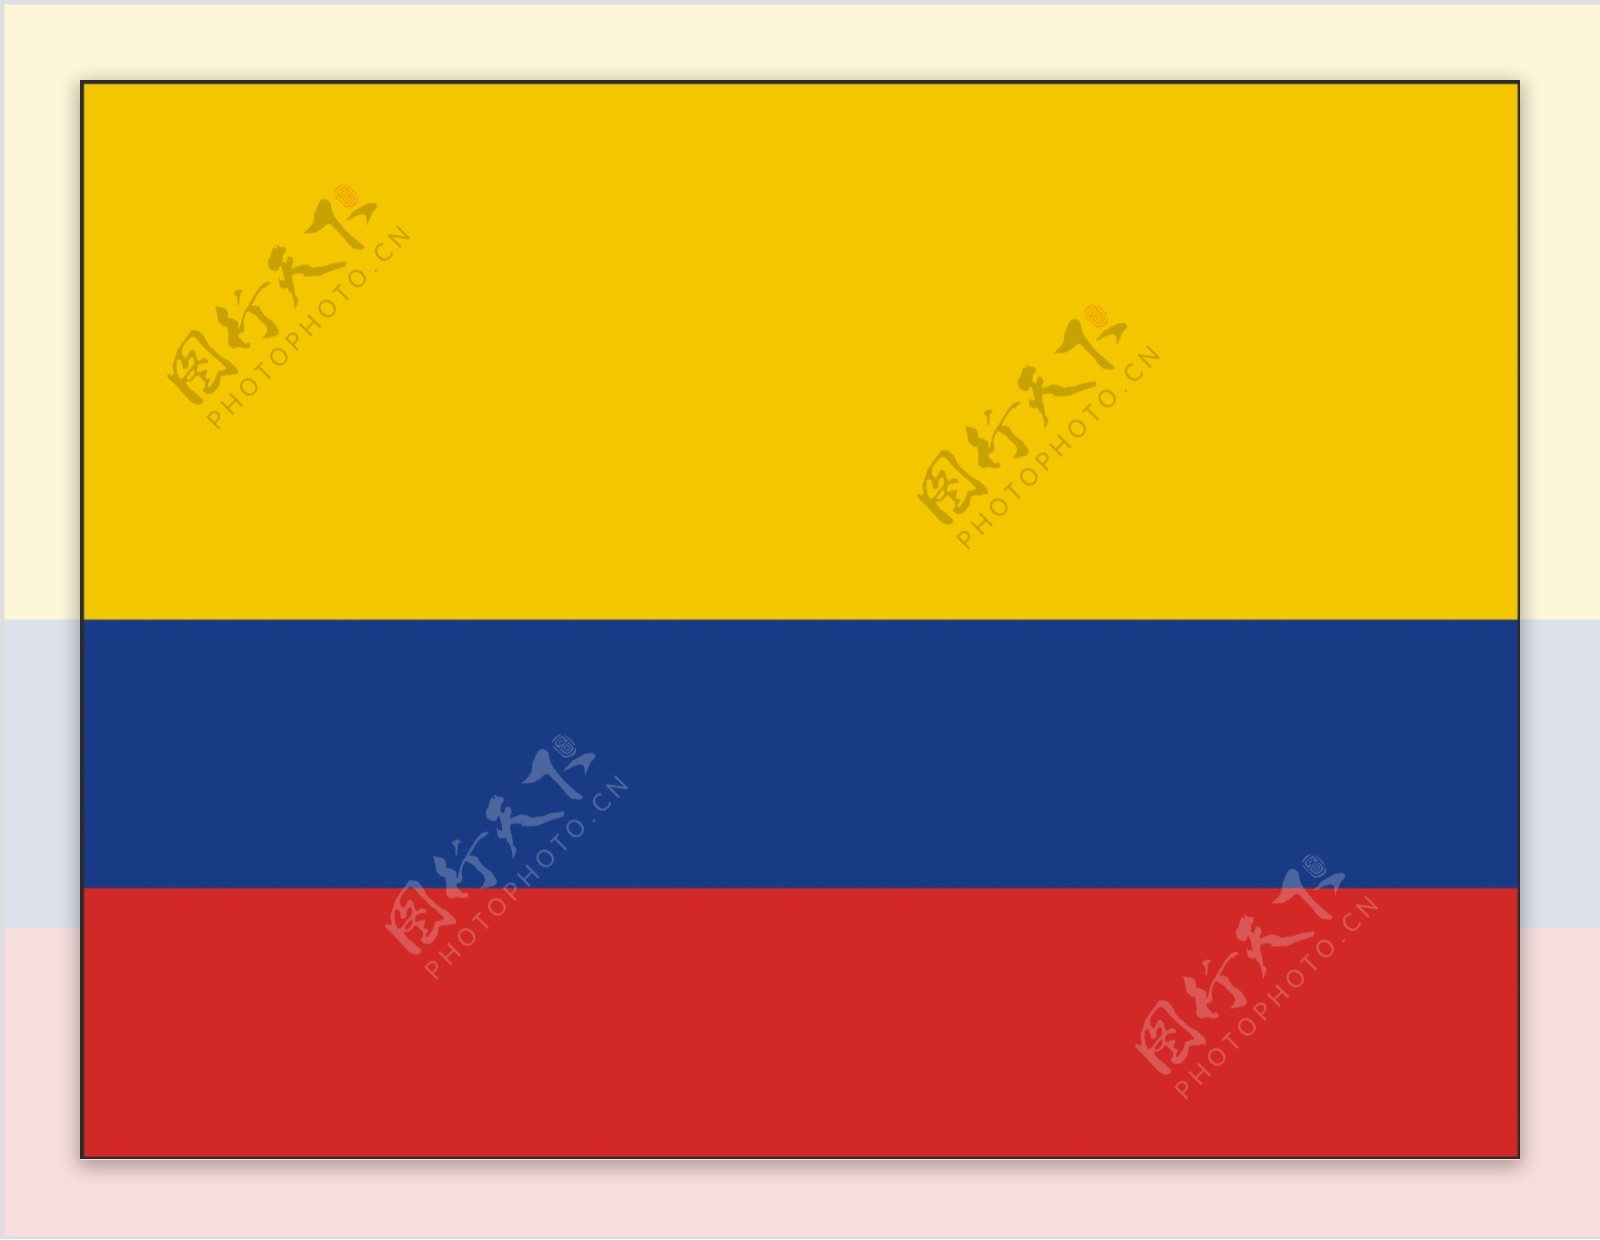 矢量哥伦比亚国旗